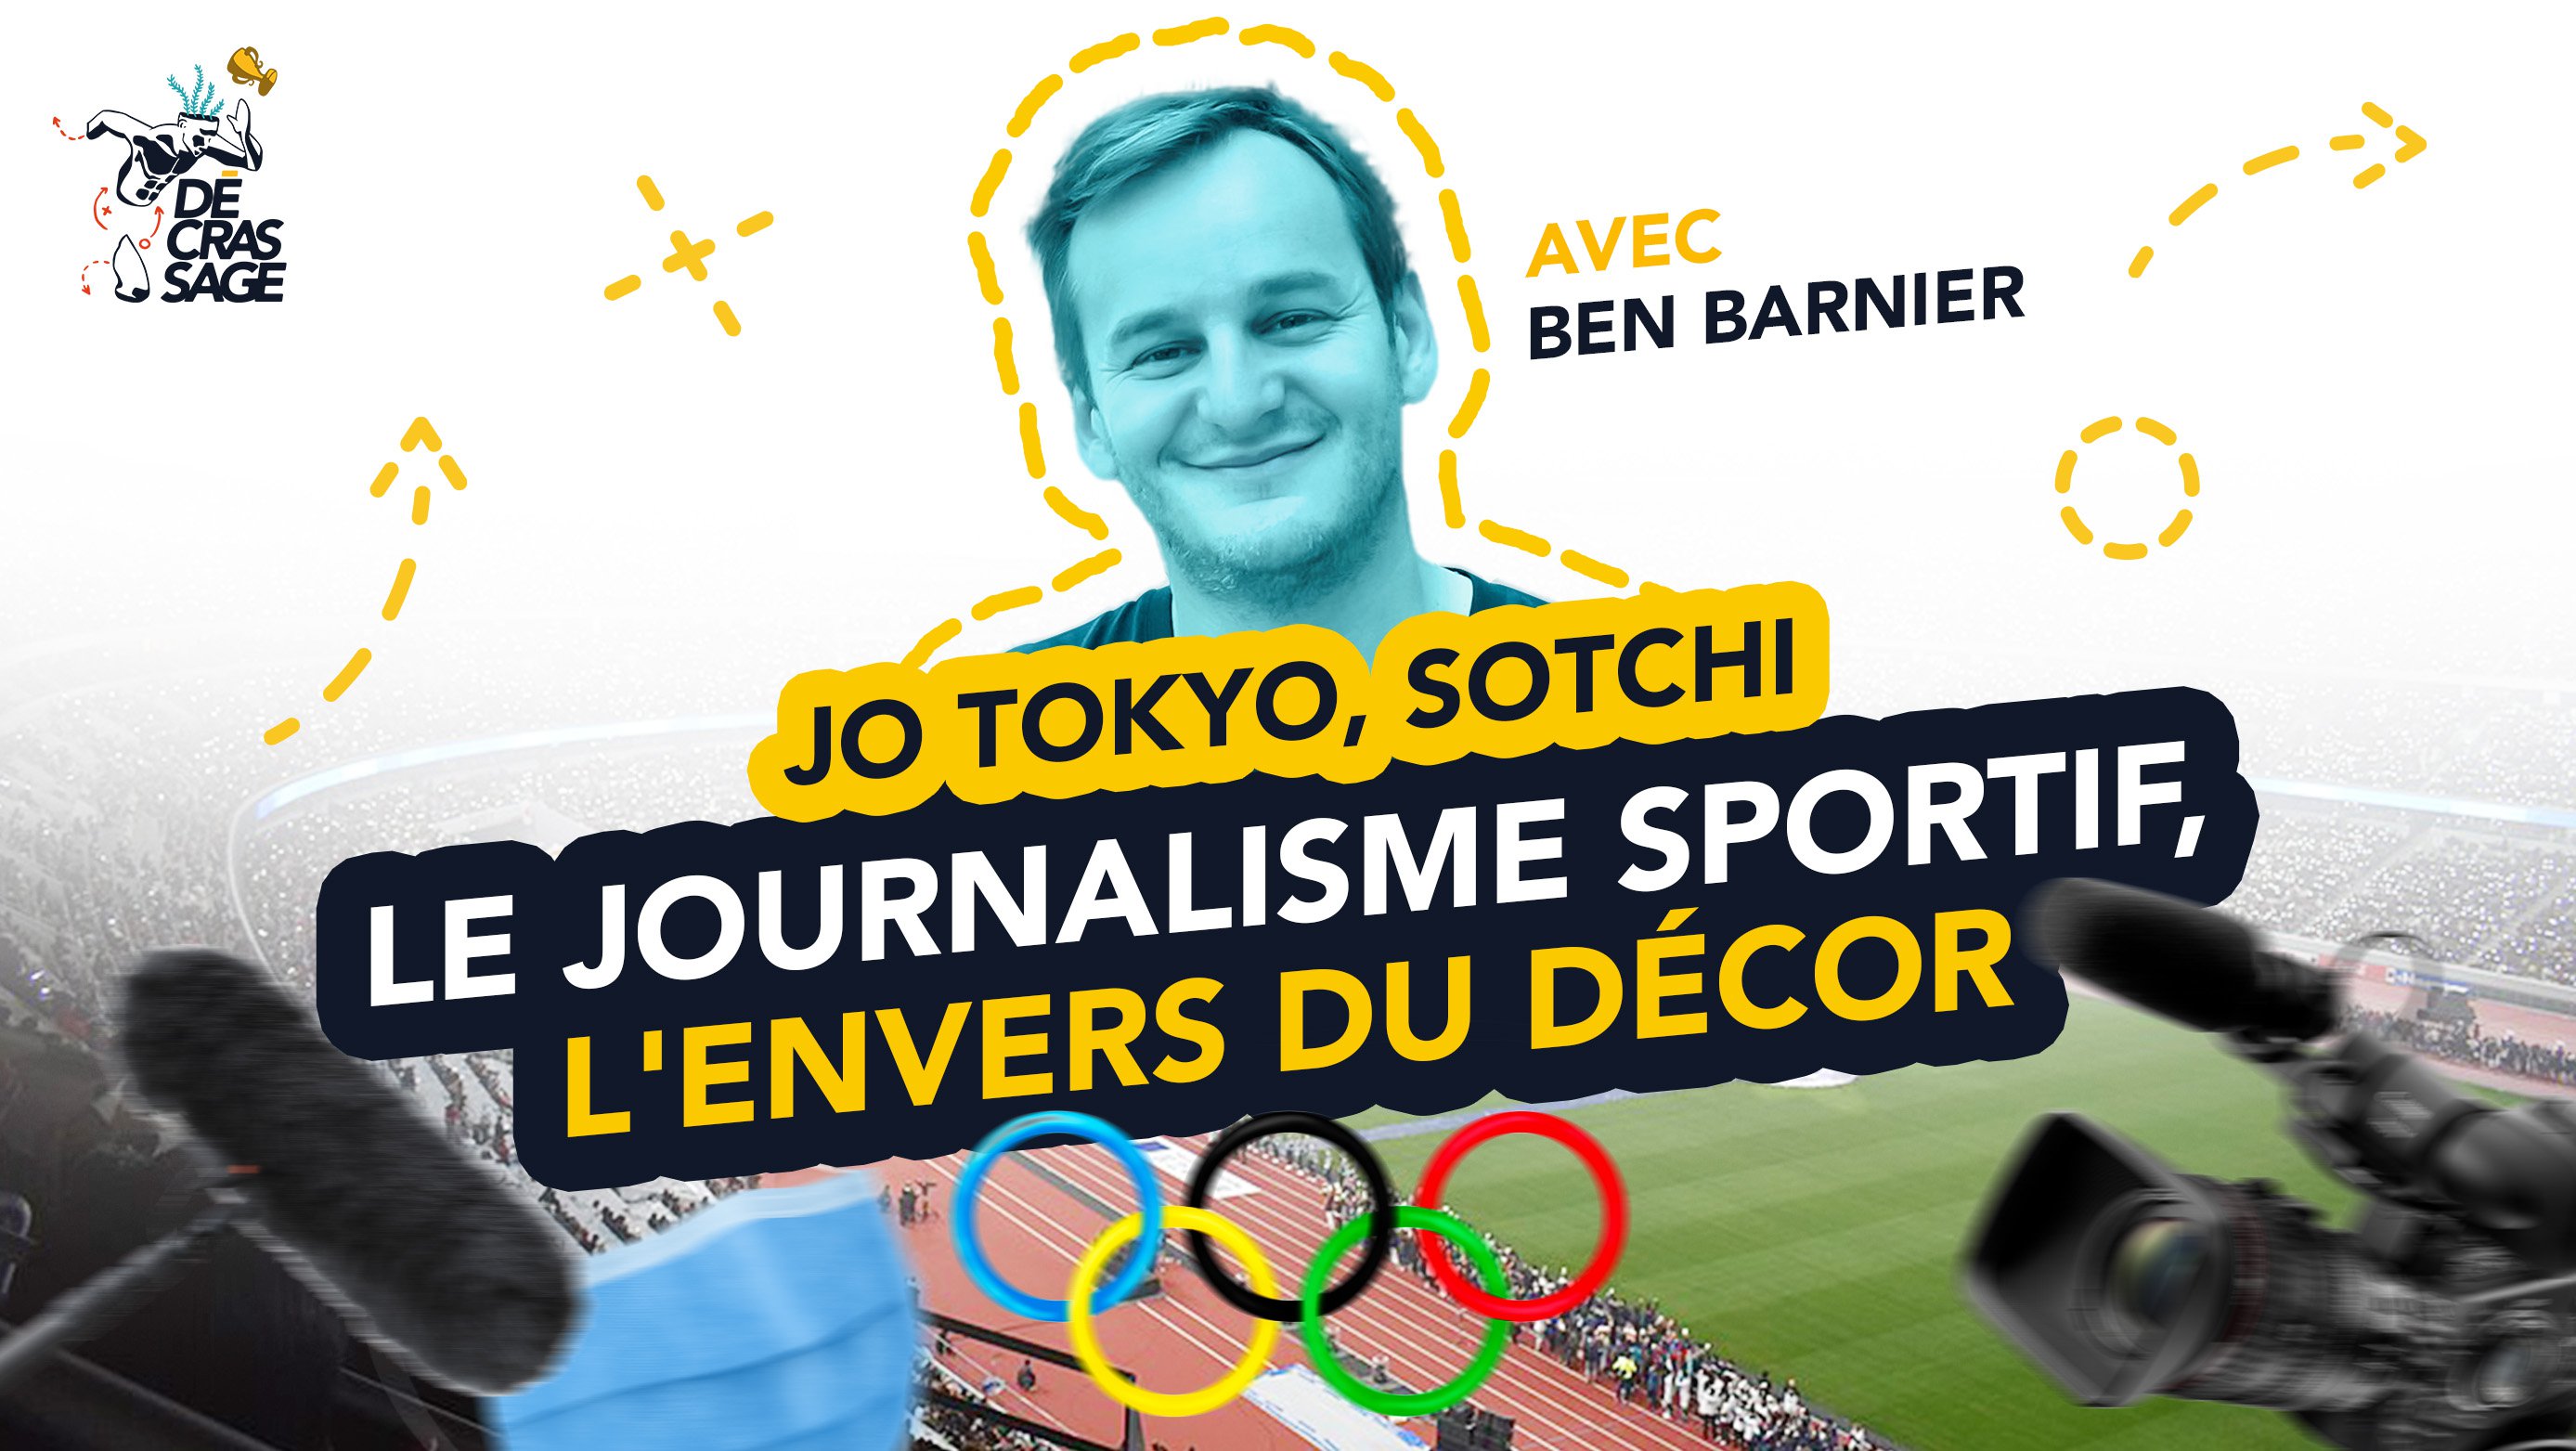 Olimpiadi di Tokyo, Sochi: giornalismo sportivo e dietro le quinte